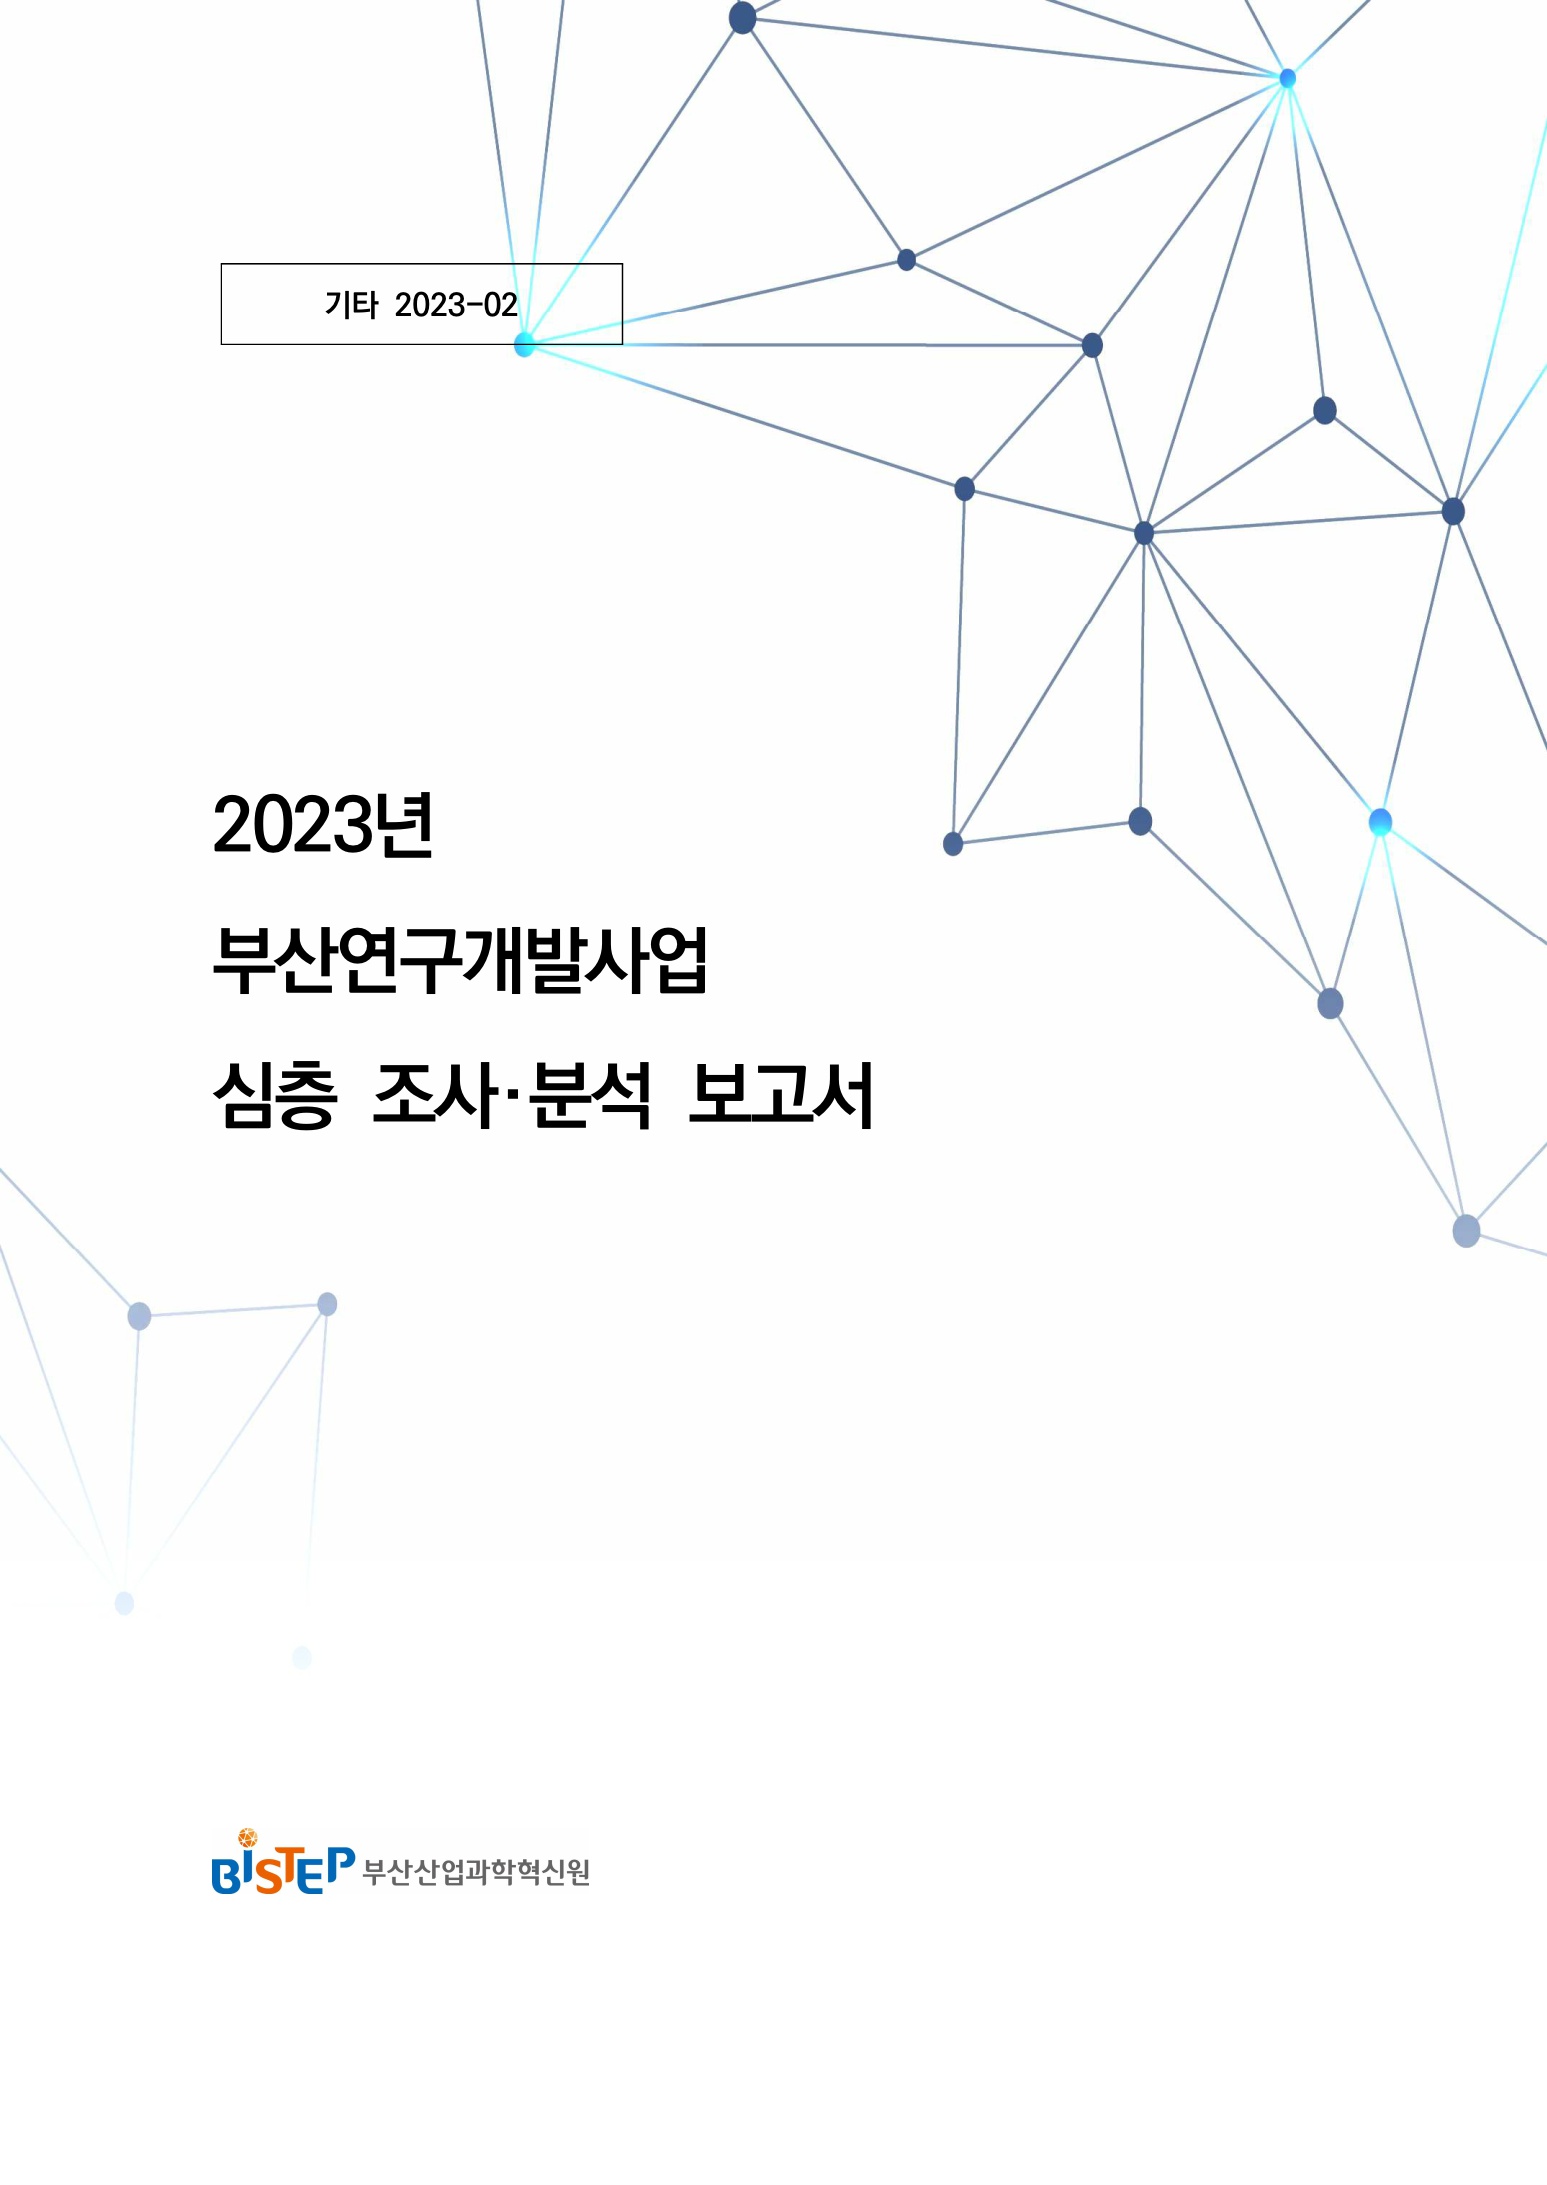 2023.12_기타 2023-02_부산연구개발사업 심층 조사분석(2020_2022) 보고서(2023 발행)_1.jpg